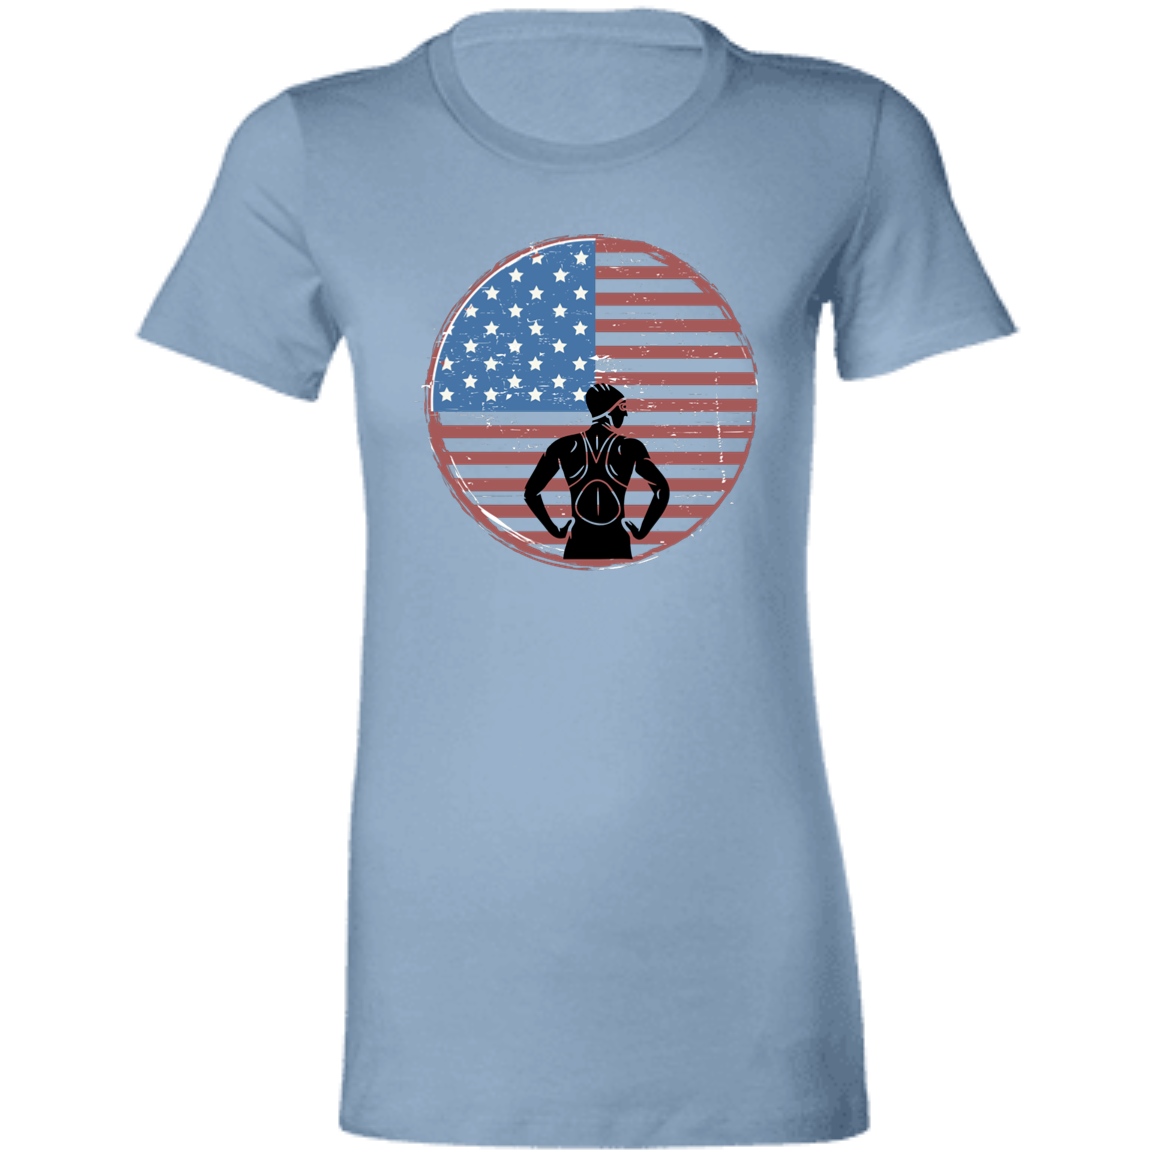 American Girl- Ladies' Favorite T-Shirt